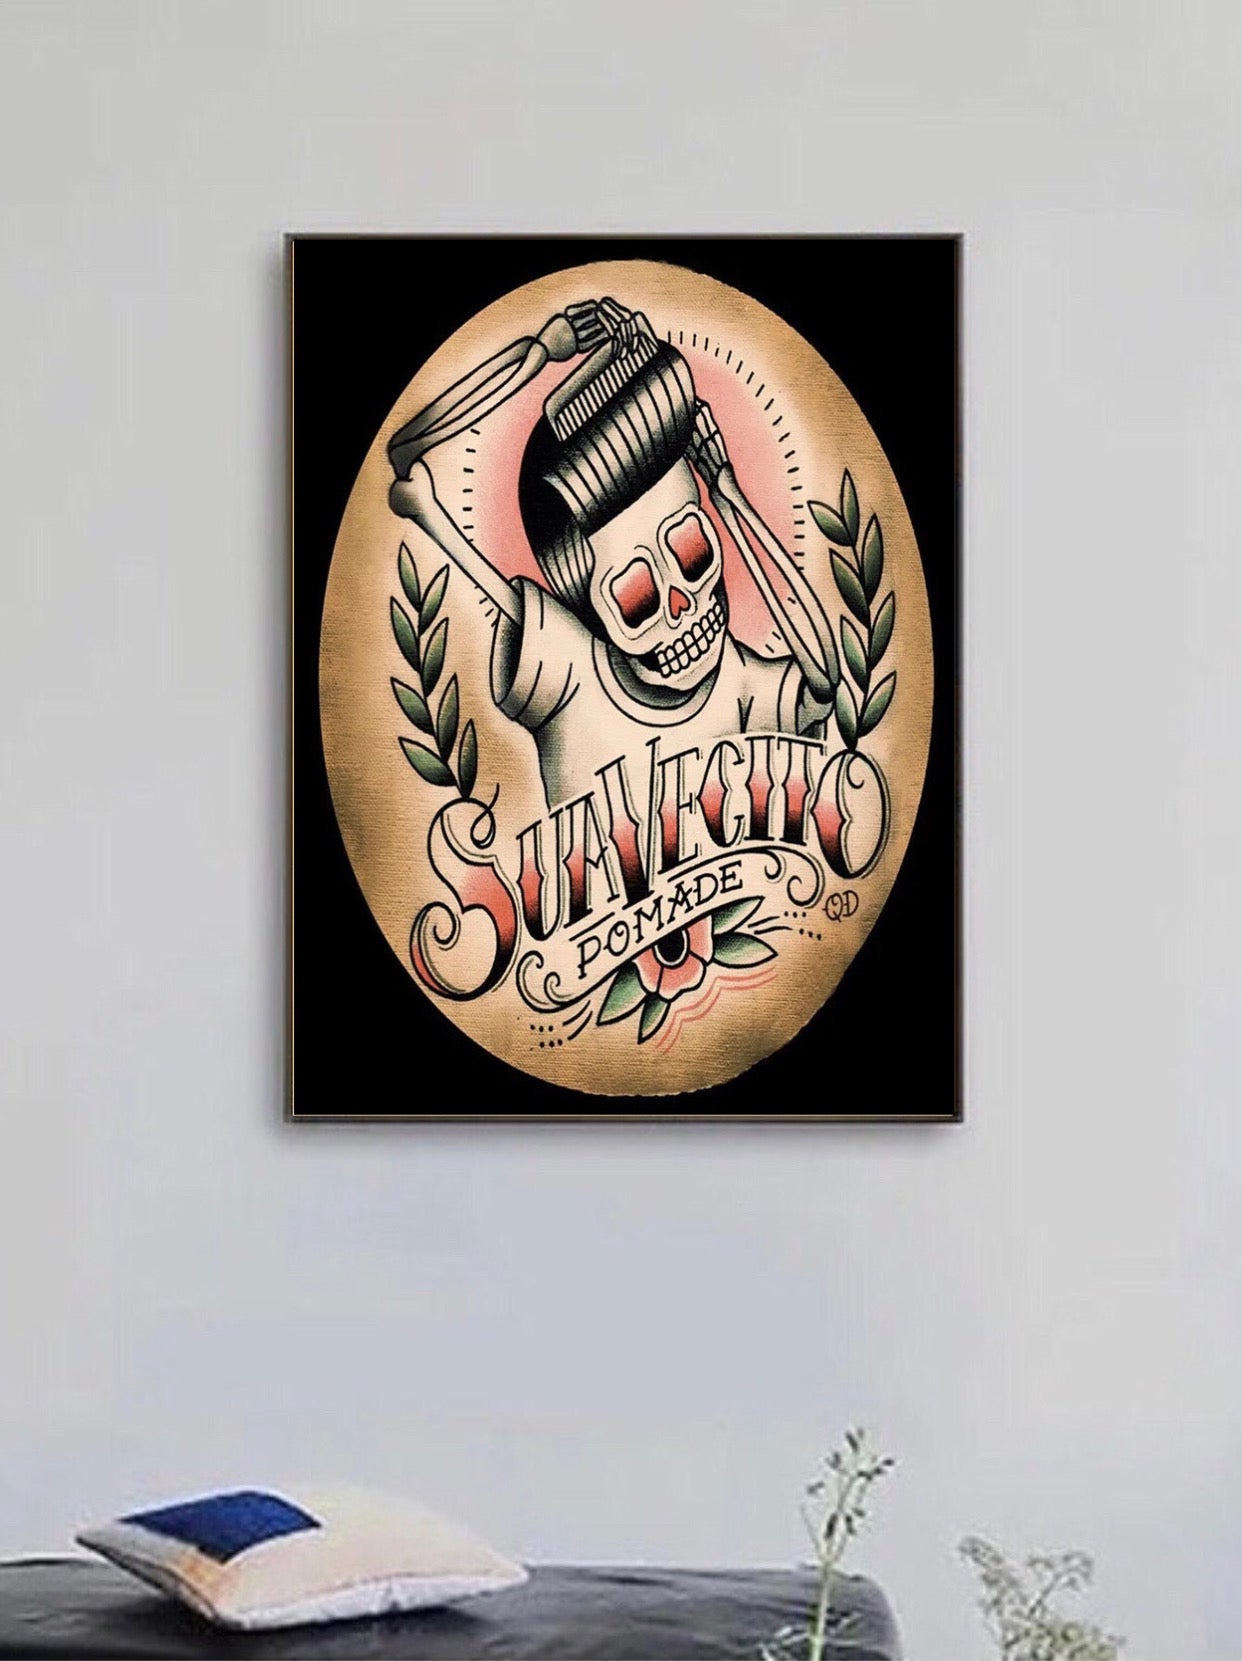 " suavecito pomade" tattoo poster